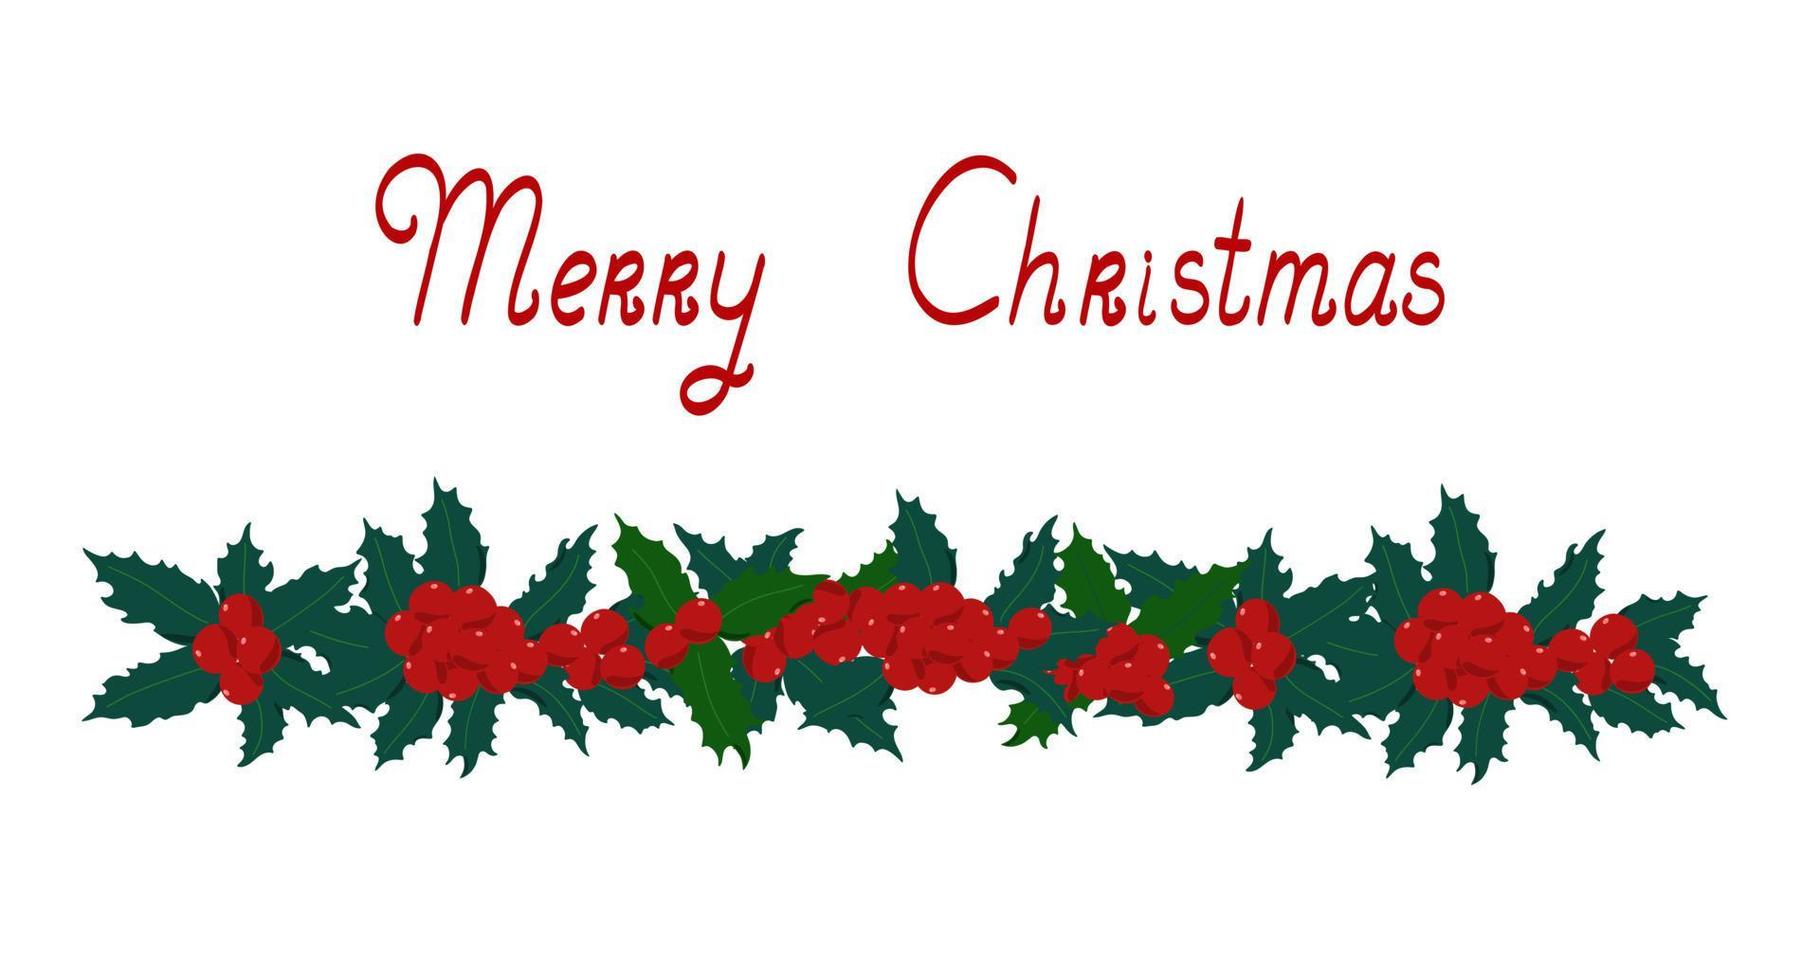 holly plant red berry guirlanda tradicional ilustração vetorial de férias de inverno, feliz natal banner horizontal, decoração para celebrações de final de ano, reuniões de família, padrão simples de humor festivo vetor